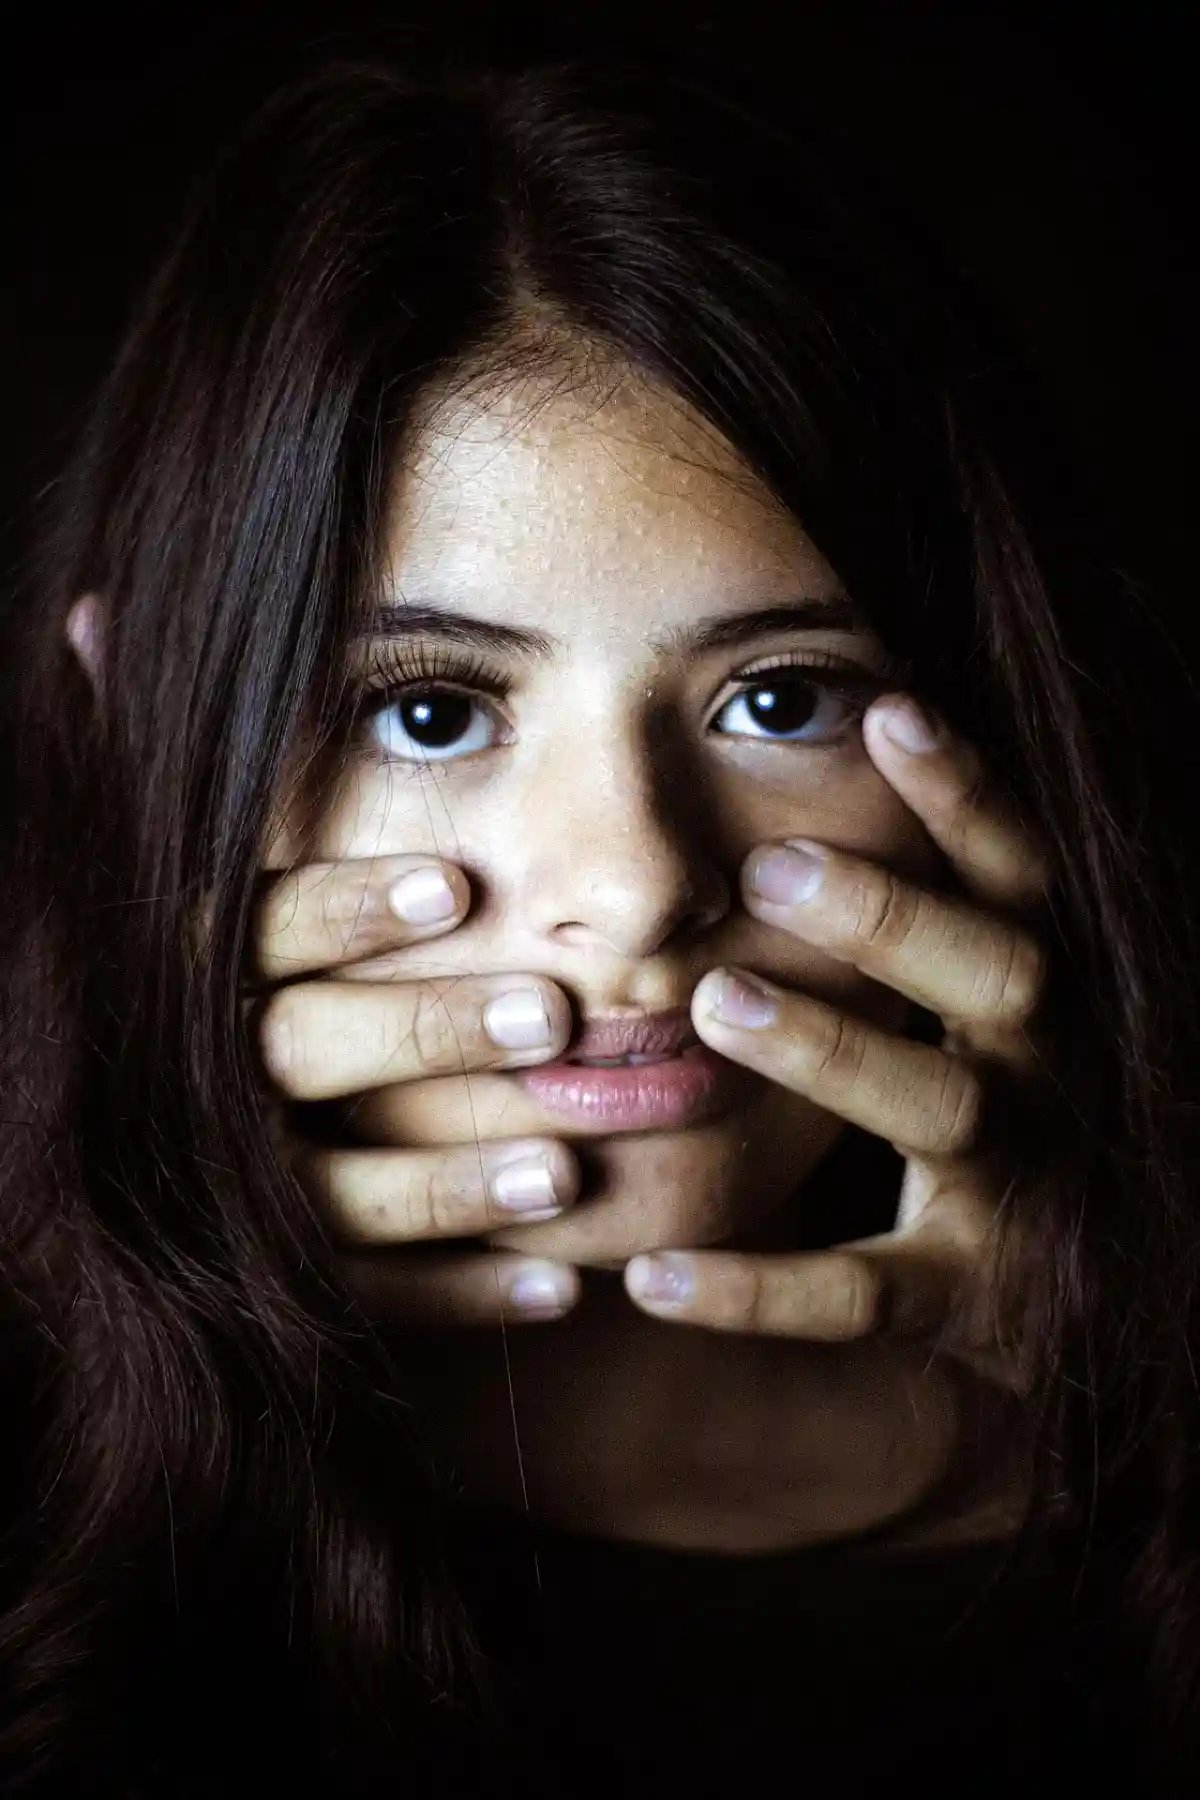  В течение нескольких часов молодые люди по кругу насиловали девушку, унижая и издеваясь над ней. Pixabay License / pixabay.com